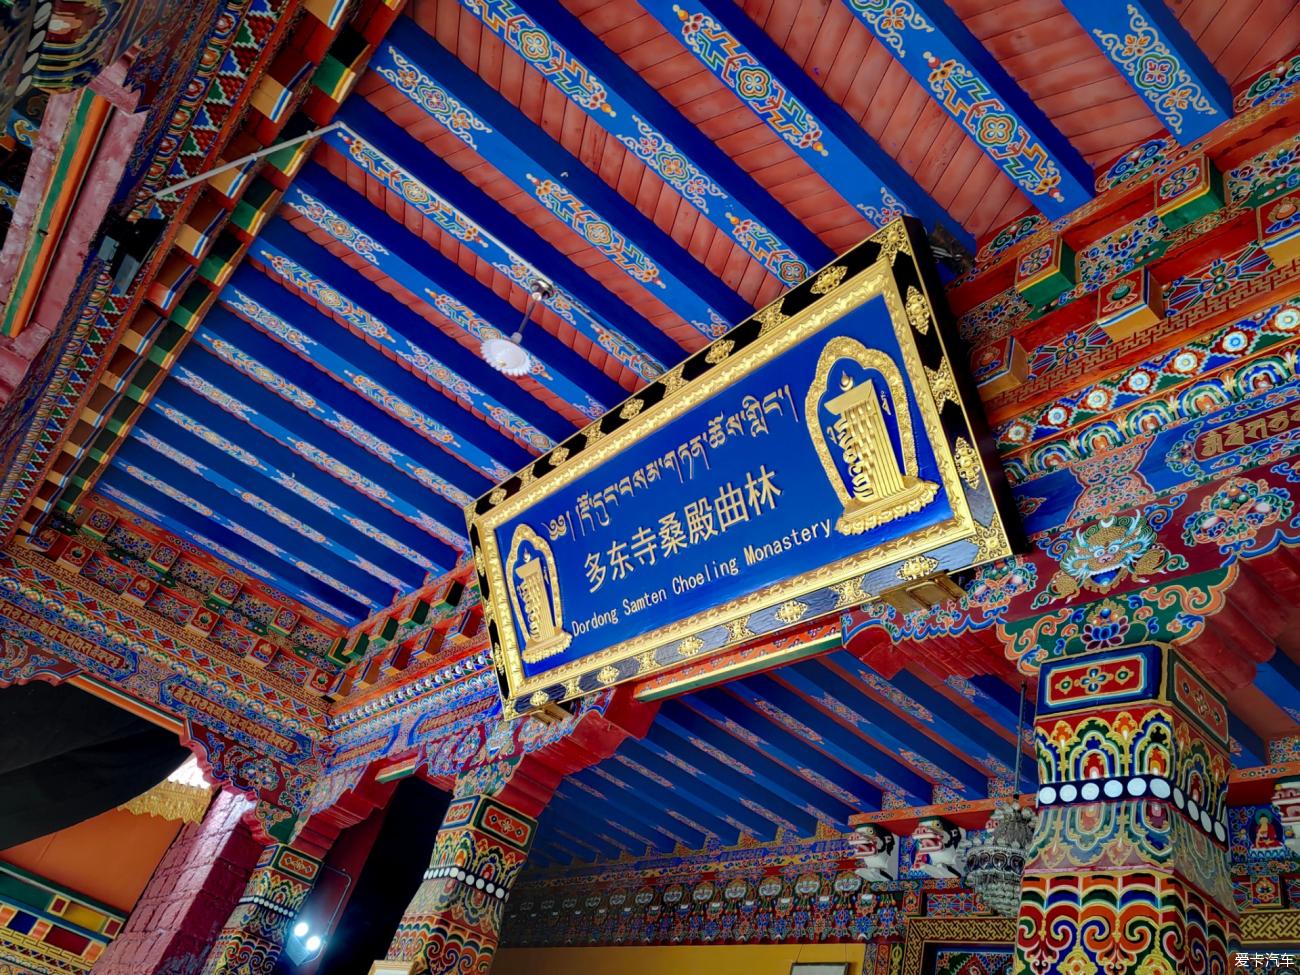 第五次进藏之旅---20、波密“多东寺”-爱卡汽车网论坛